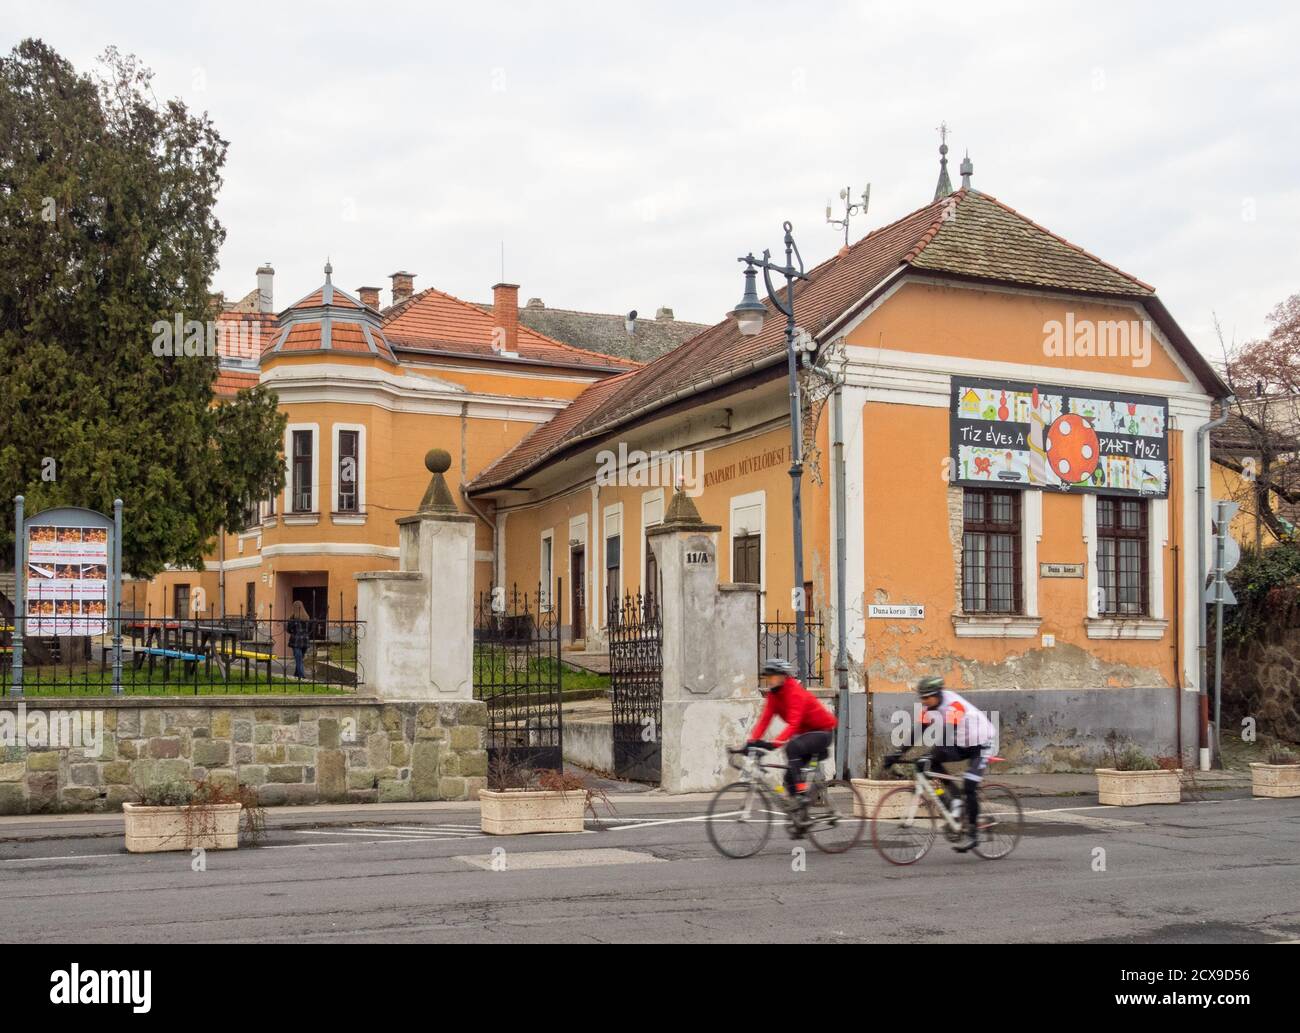 El cine P'Art de diez años de antigüedad en esta antigua casa en el paseo del Danubio (Duna Korzo) es una de las bases culturales dominantes de la ciudad - Szentendre, Hungar Foto de stock